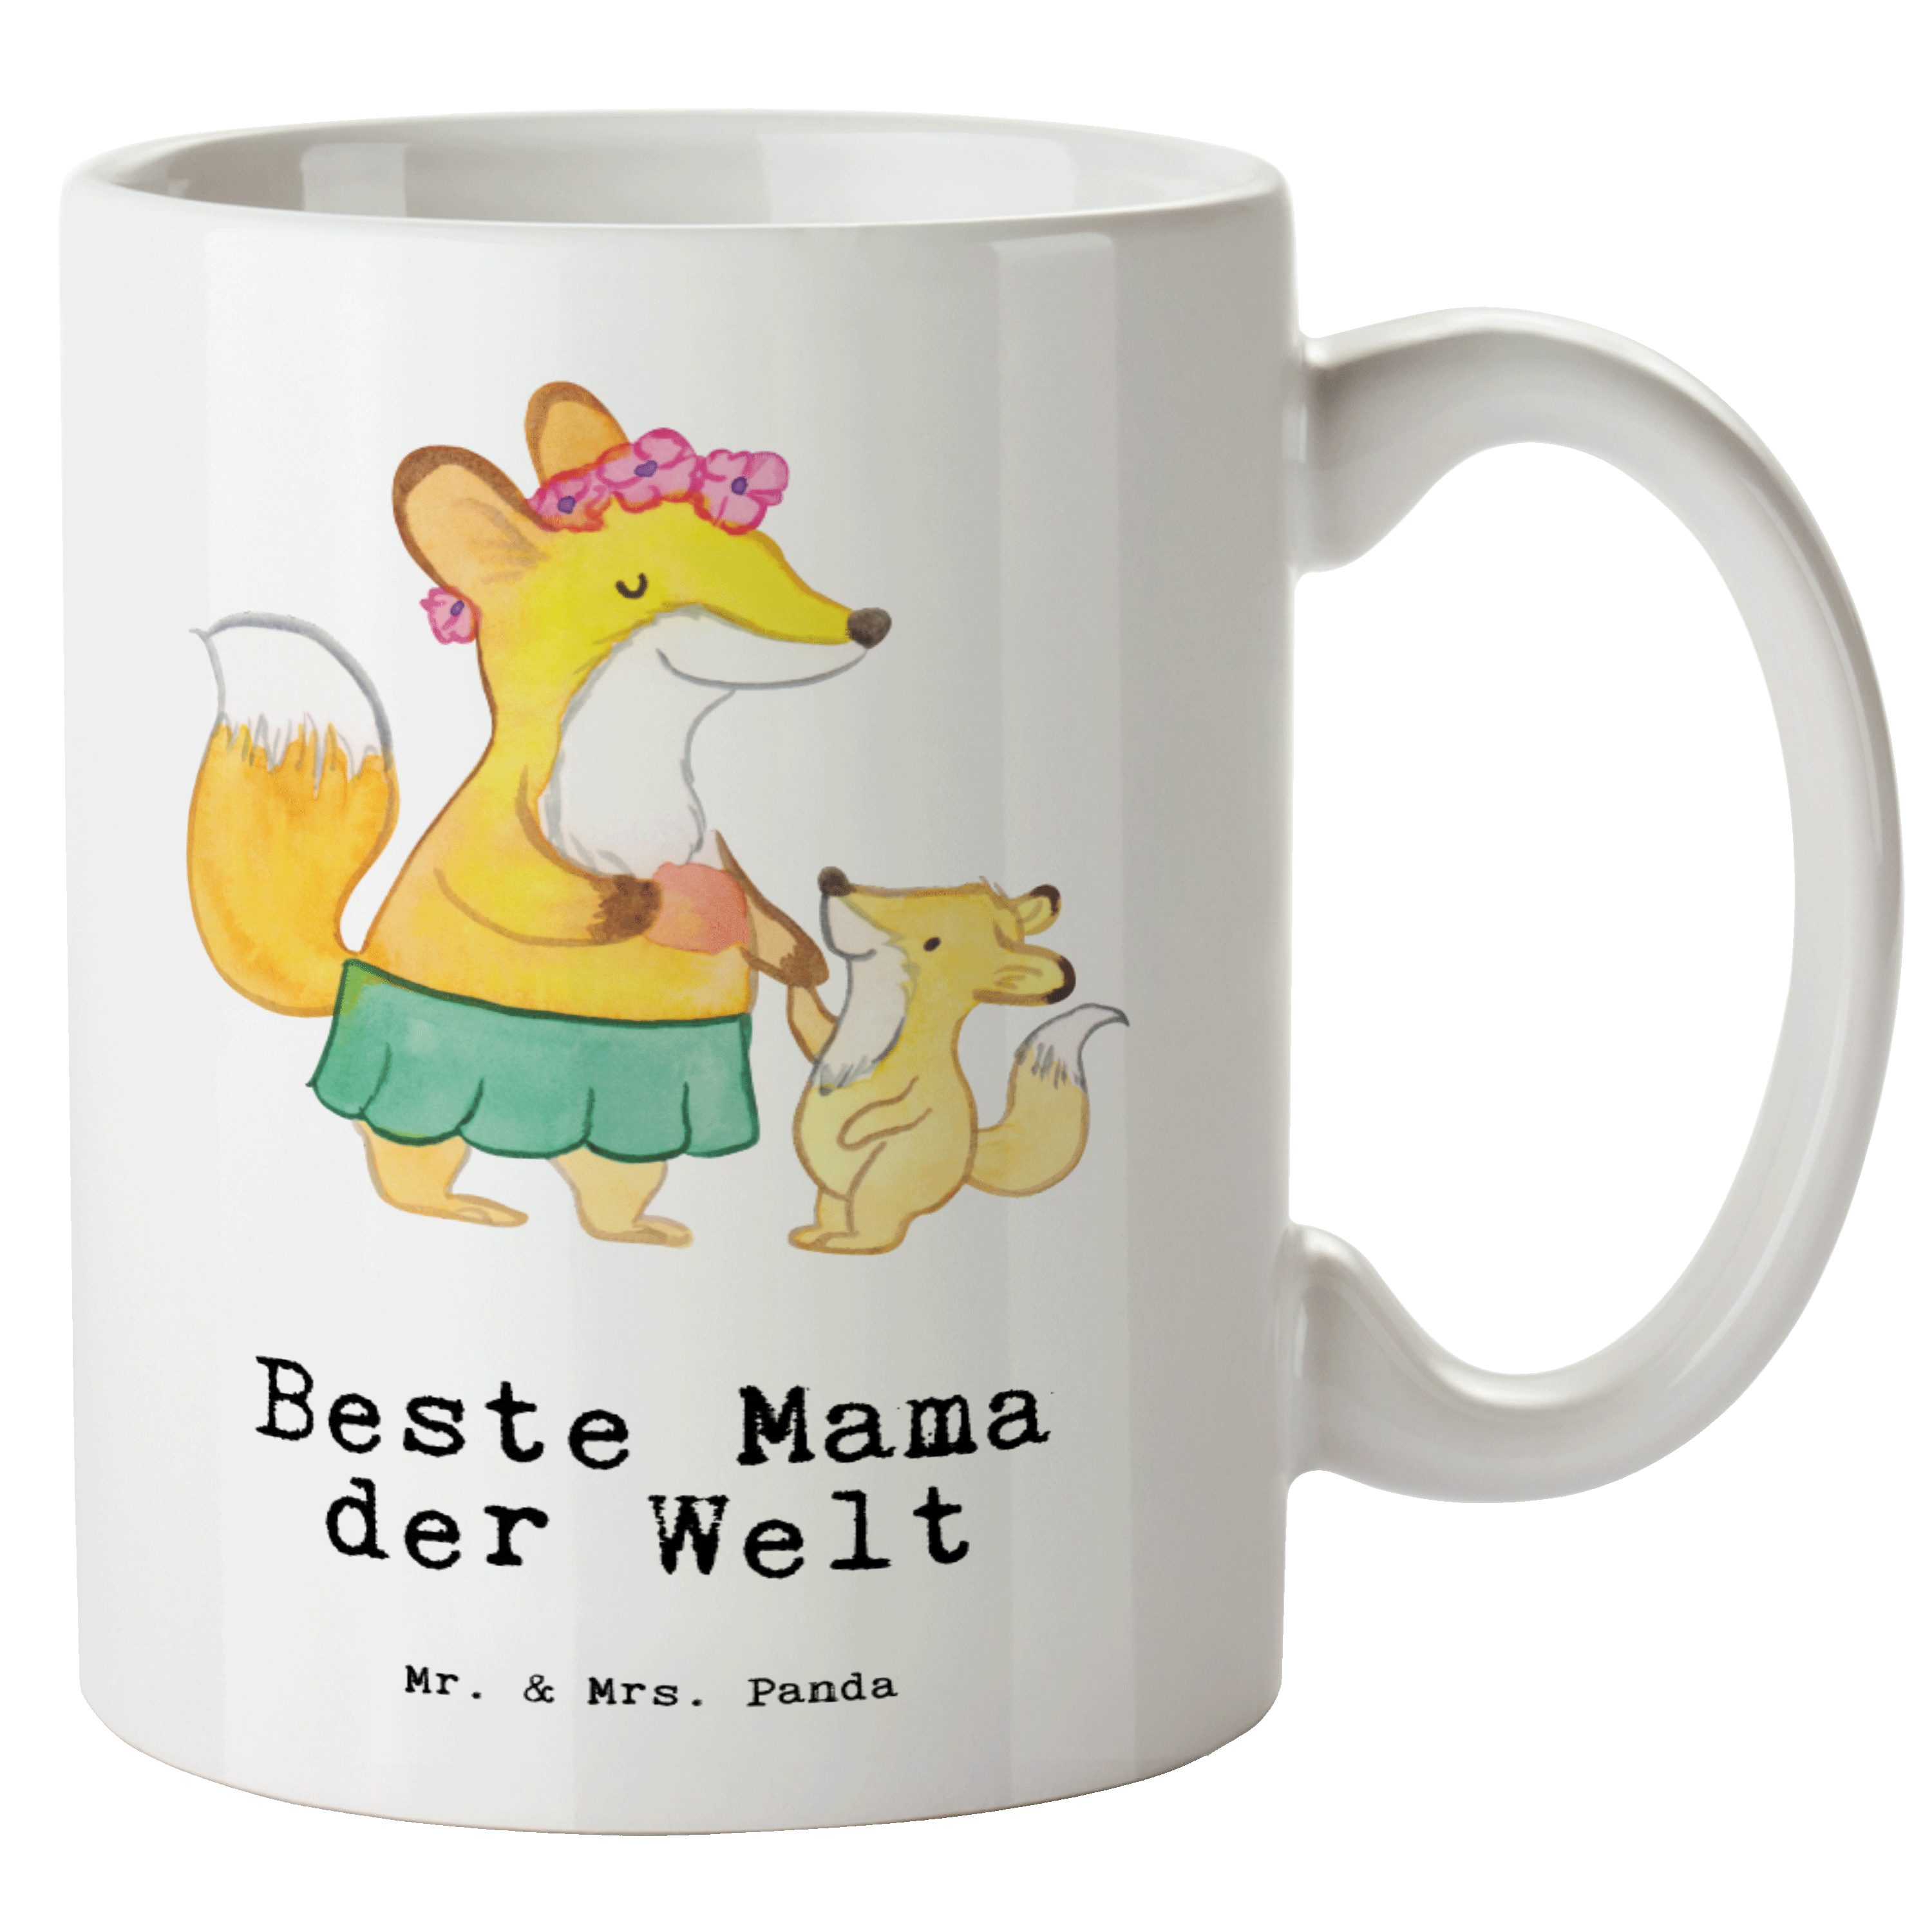 Mr. & Mrs. Panda Tasse Fuchs Beste Mama der Welt - Weiß - Geschenk, spülmaschinenfest, Mutte, XL Tasse Keramik